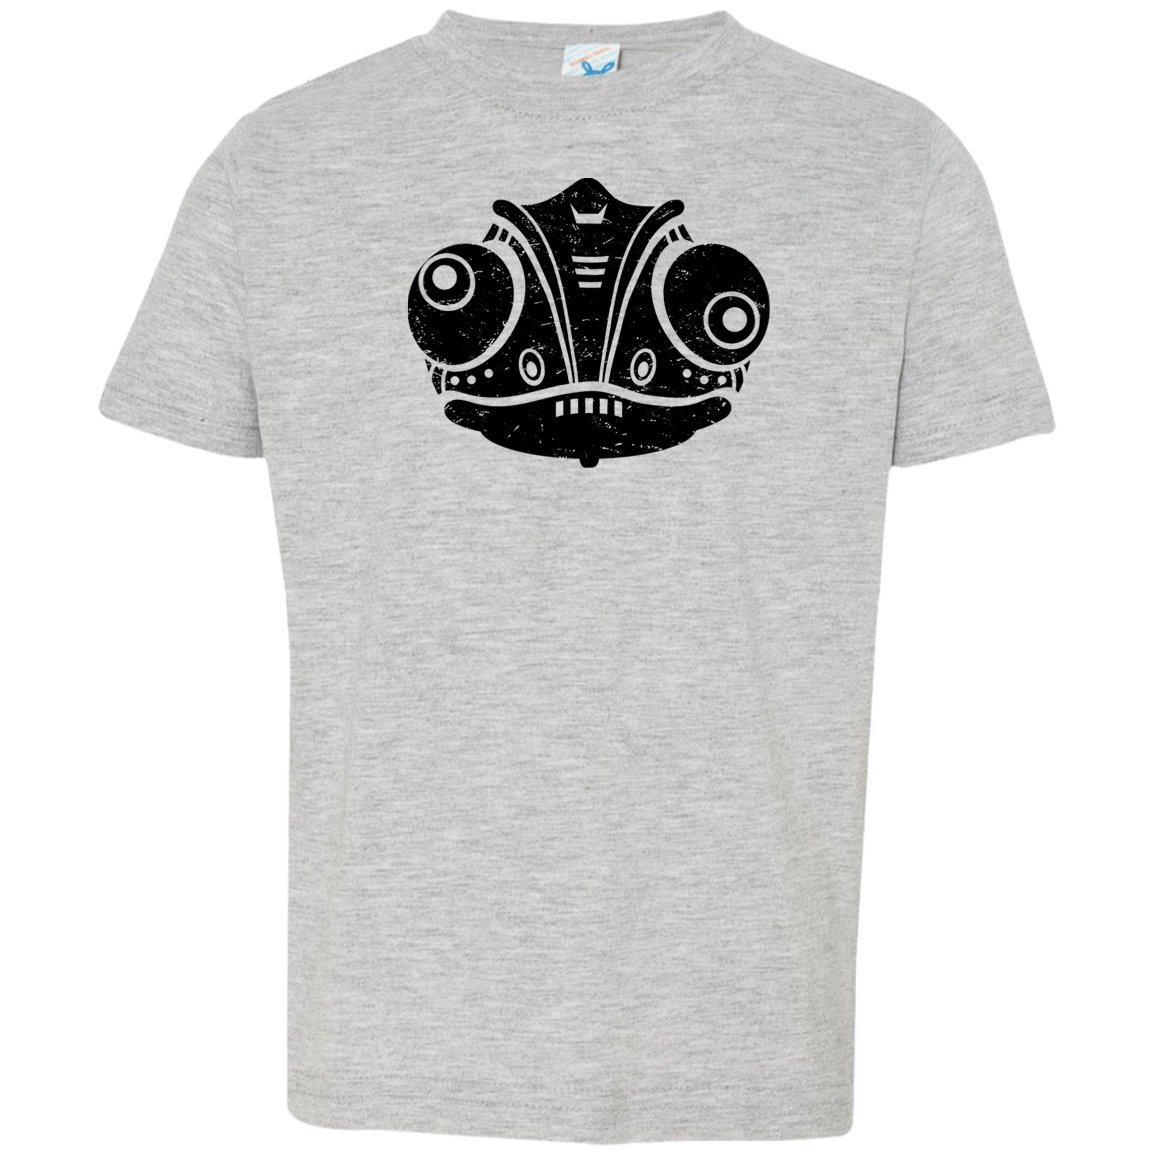 Black Distressed Emblem T-Shirt for Toddlers (Chameleon/Fade)